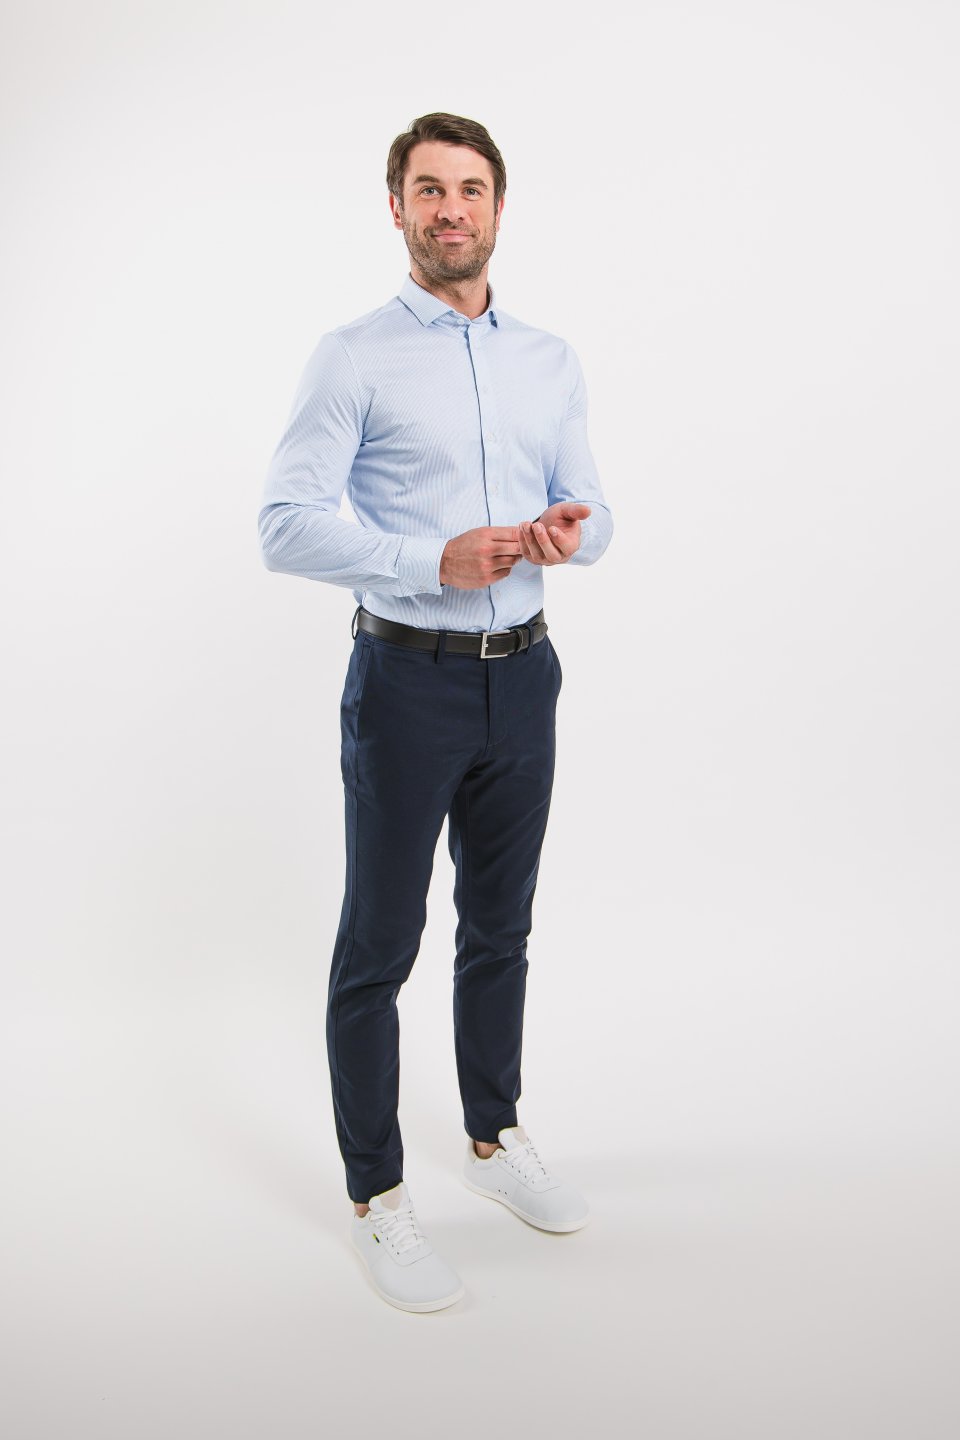 Men’s Shirt Slim Be Lenka Essentials - Blue and White